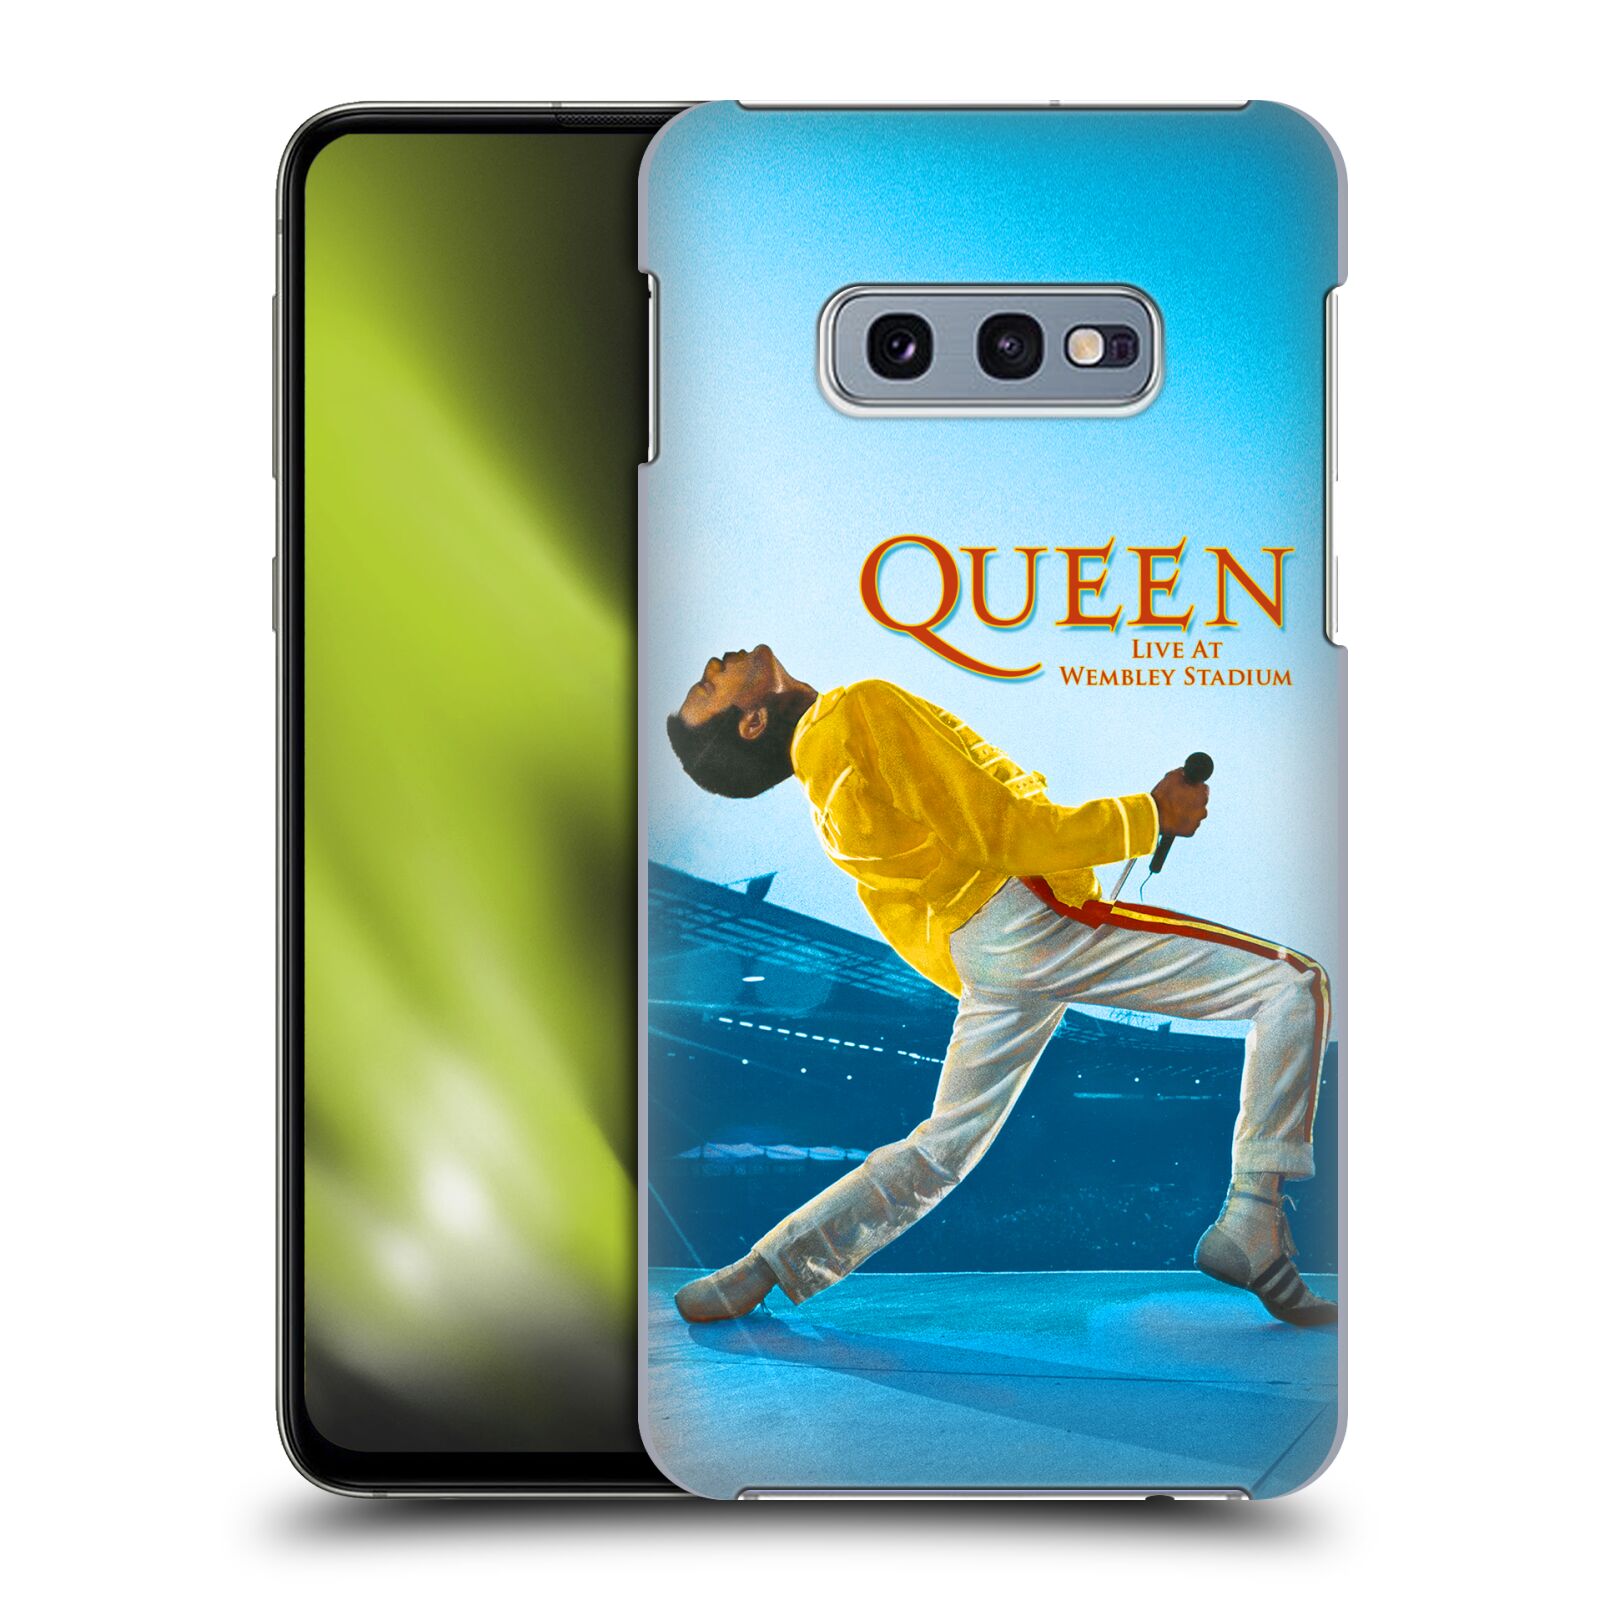 Pouzdro na mobil Samsung Galaxy S10e - HEAD CASE - zpěvák Queen skupina Freddie Mercury